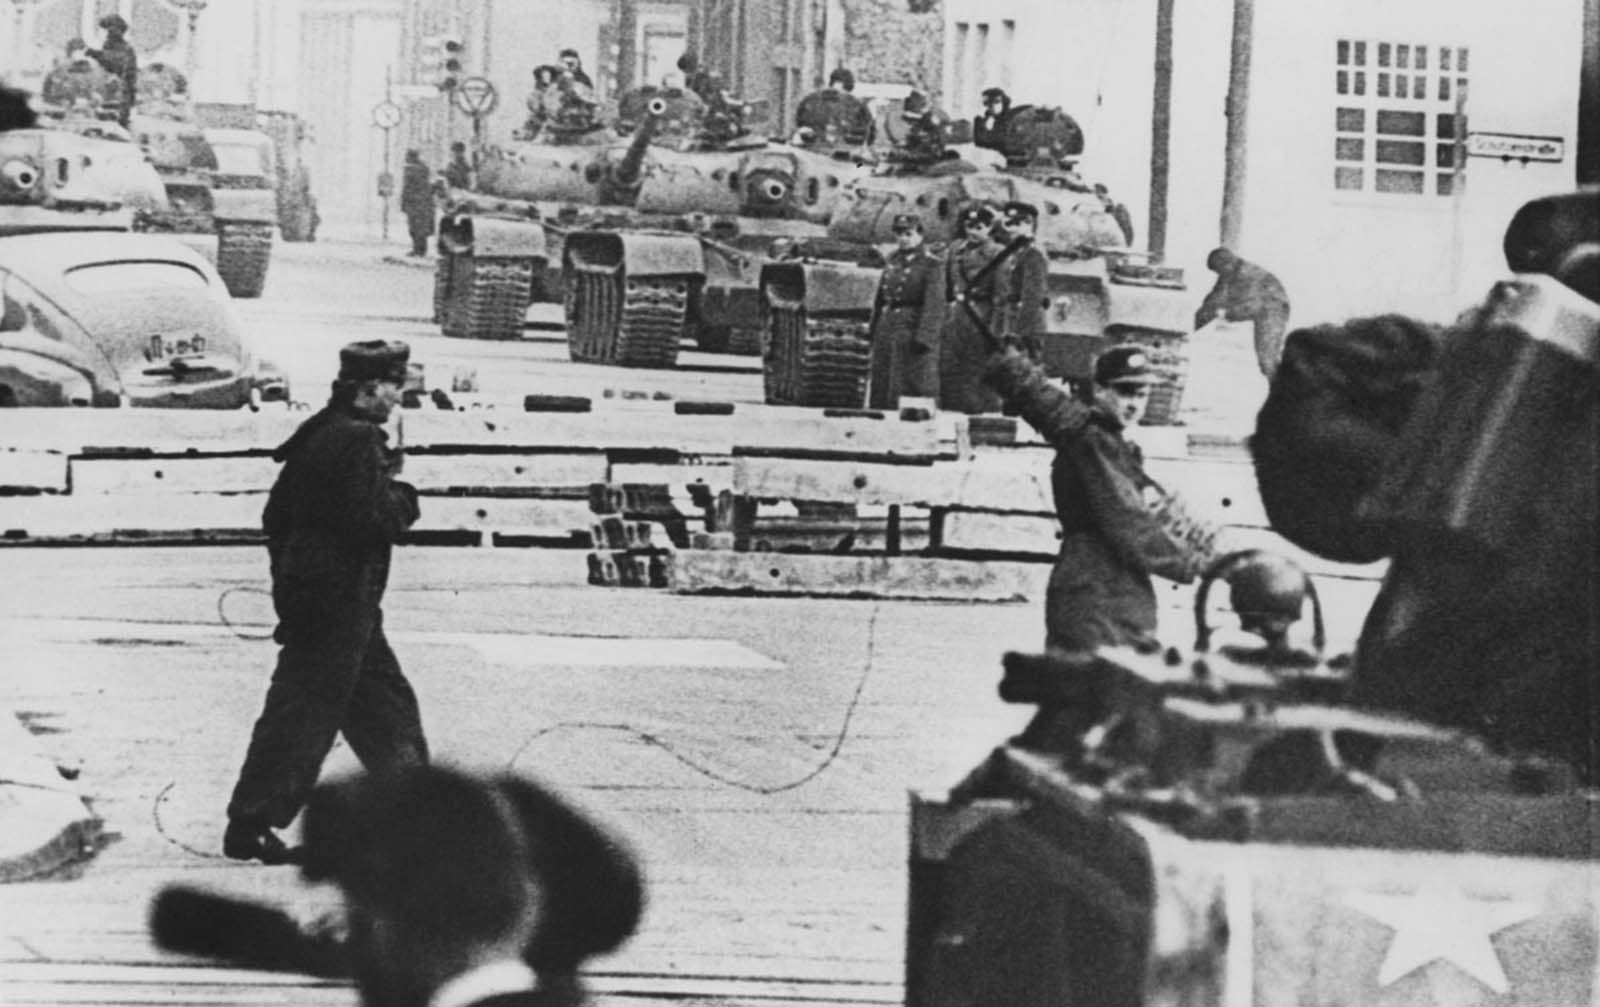 Az orosz (háttér) és az amerikai (előtér) tartályok szembesülnek egymással a berlini Friedrichstrasse ellenőrző pontnál, a berlini fal építésekor, 1961. október 28-án.